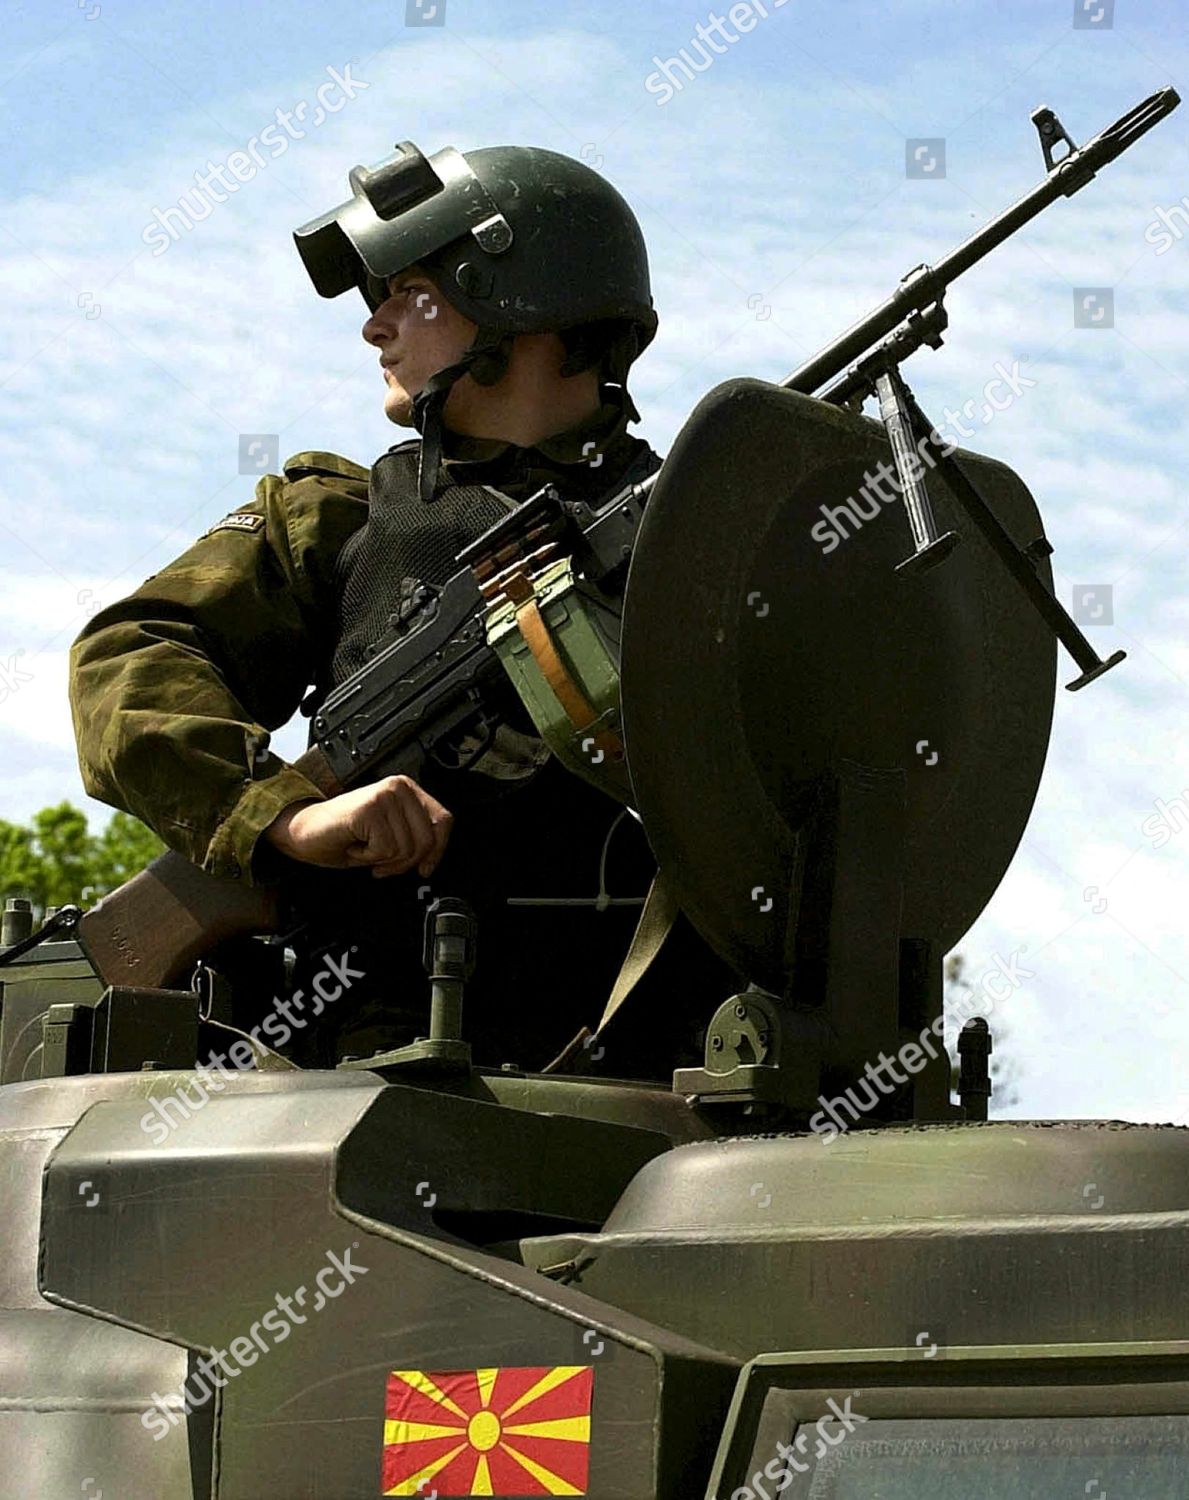 macedonia-policeman-with-machinegun-may-2001-shutterstock-editorial-8482158b.jpg